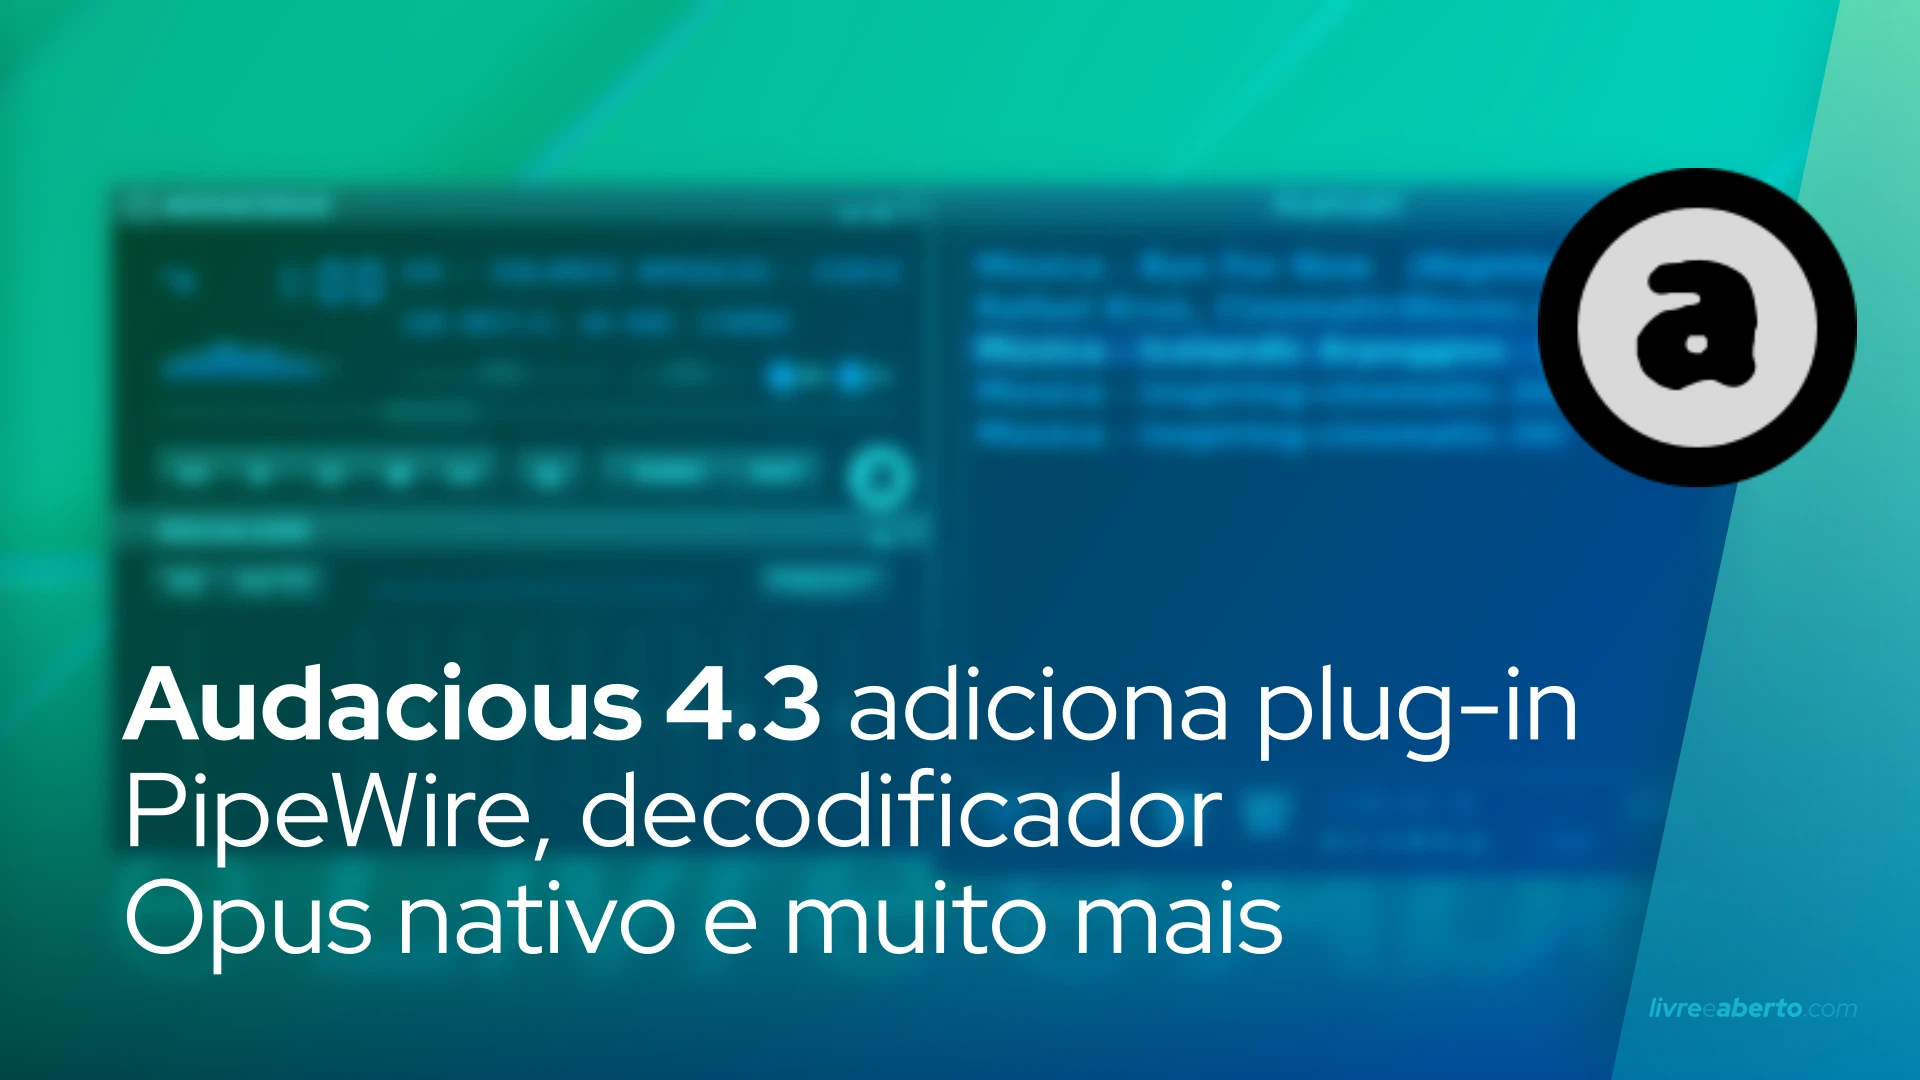 Audacious 4.3 adiciona plug-in PipeWire, decodificador Opus nativo e muito mais